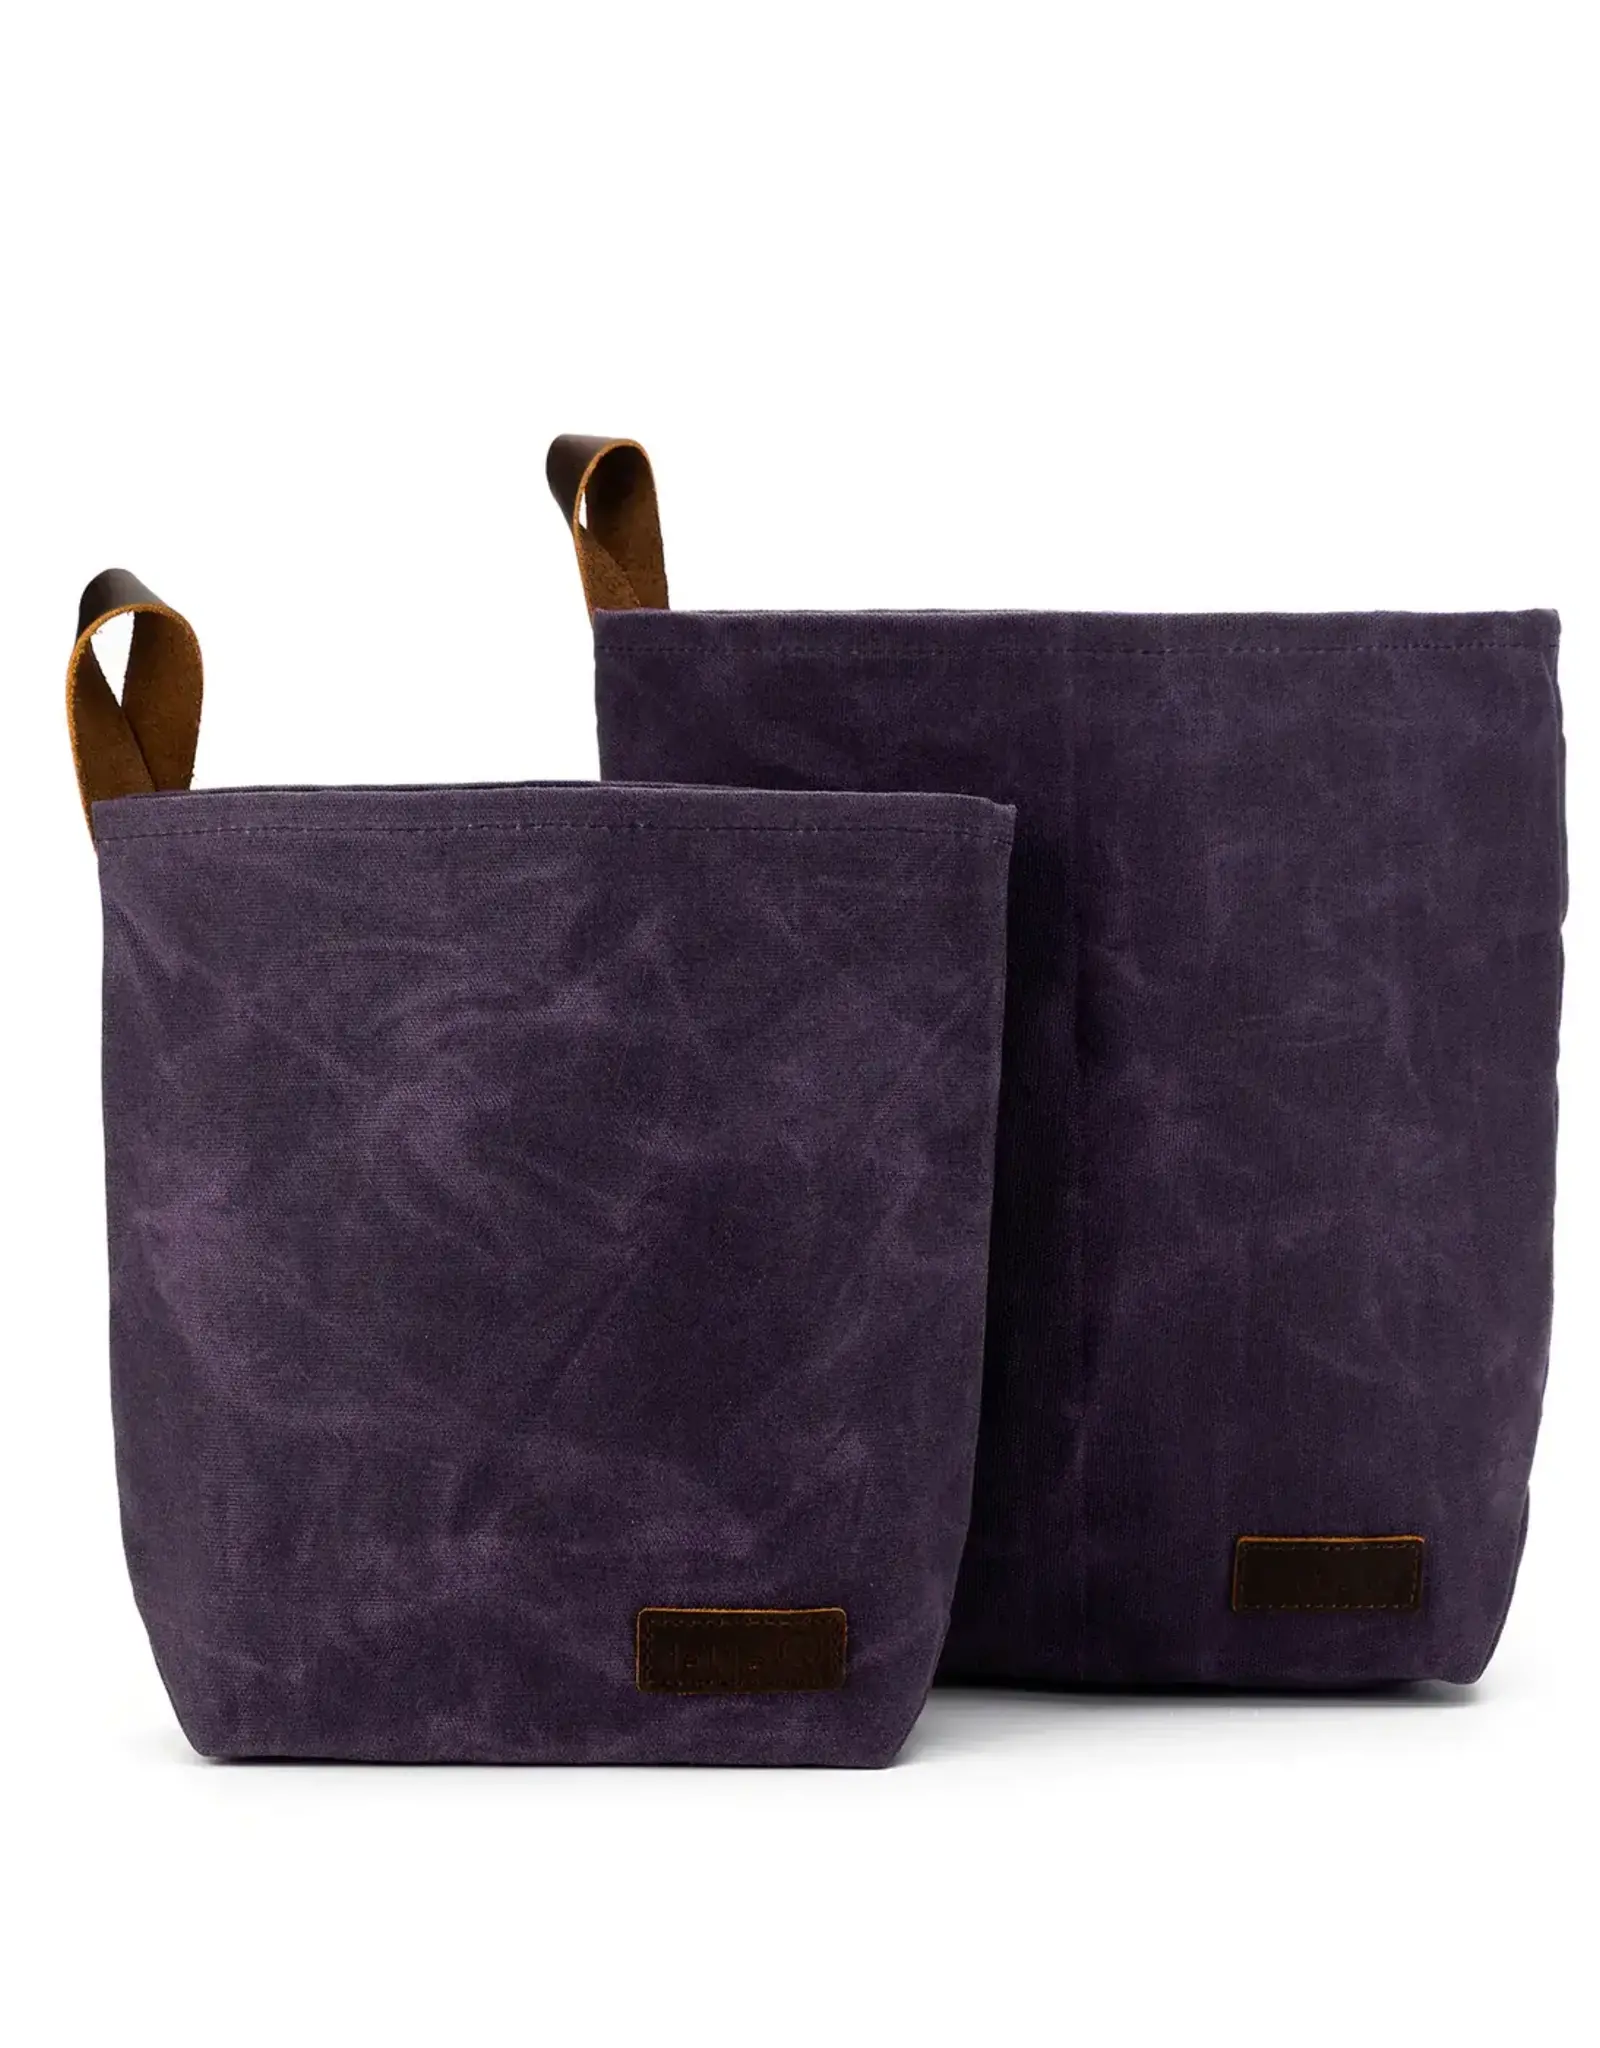 Della Q Maker's Canvas Knit Sacks purple